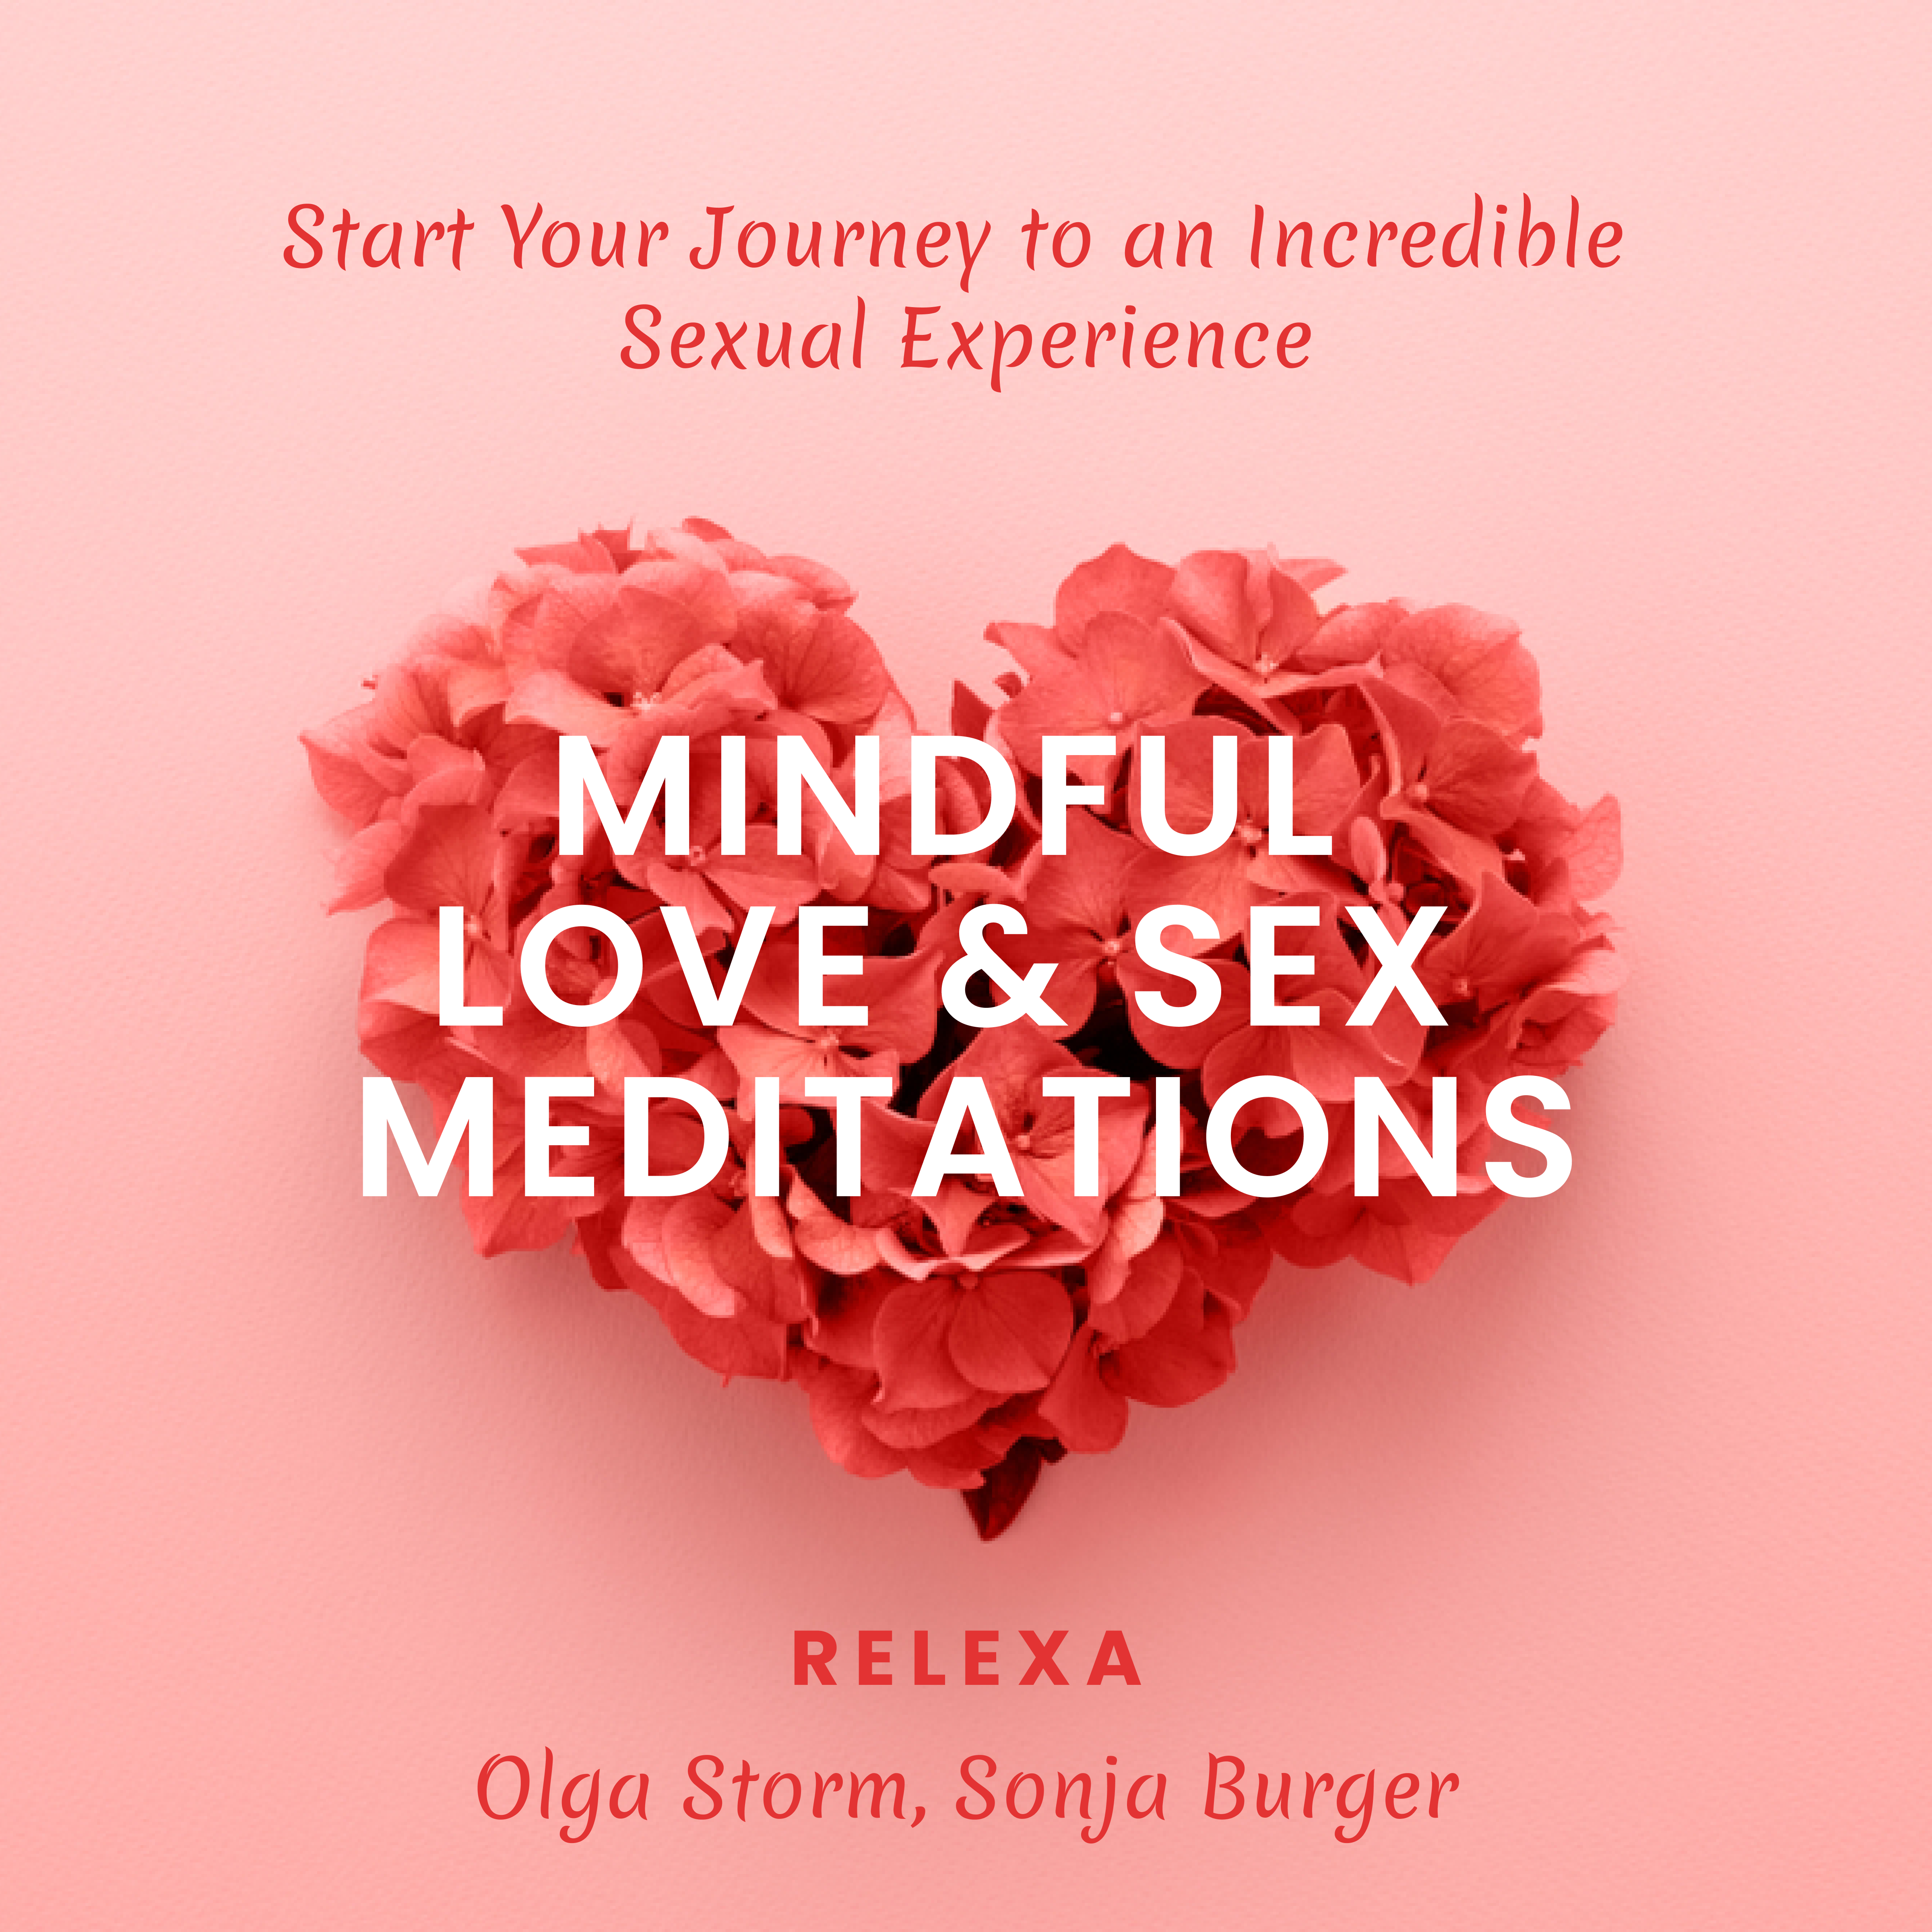 Love & Sex Meditation